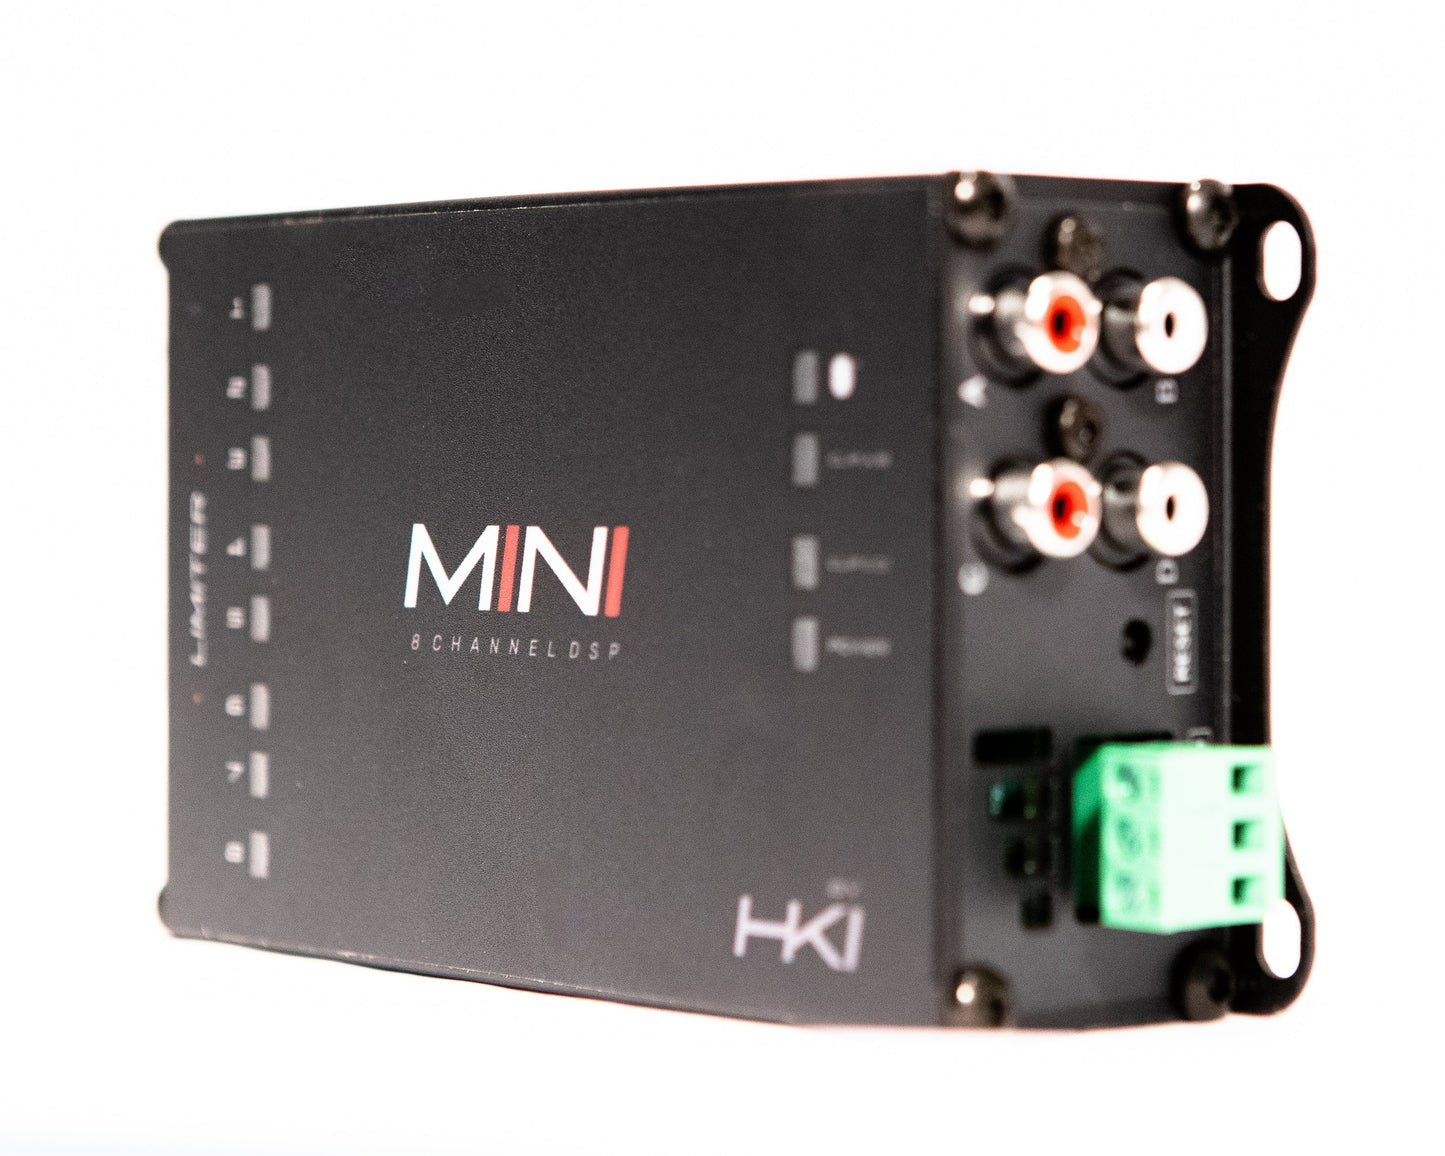 SounDigital EVOX Digital Sound Processors SounDigital HKI MINI - DIGITAL SOUND PROCESSOR - DSP